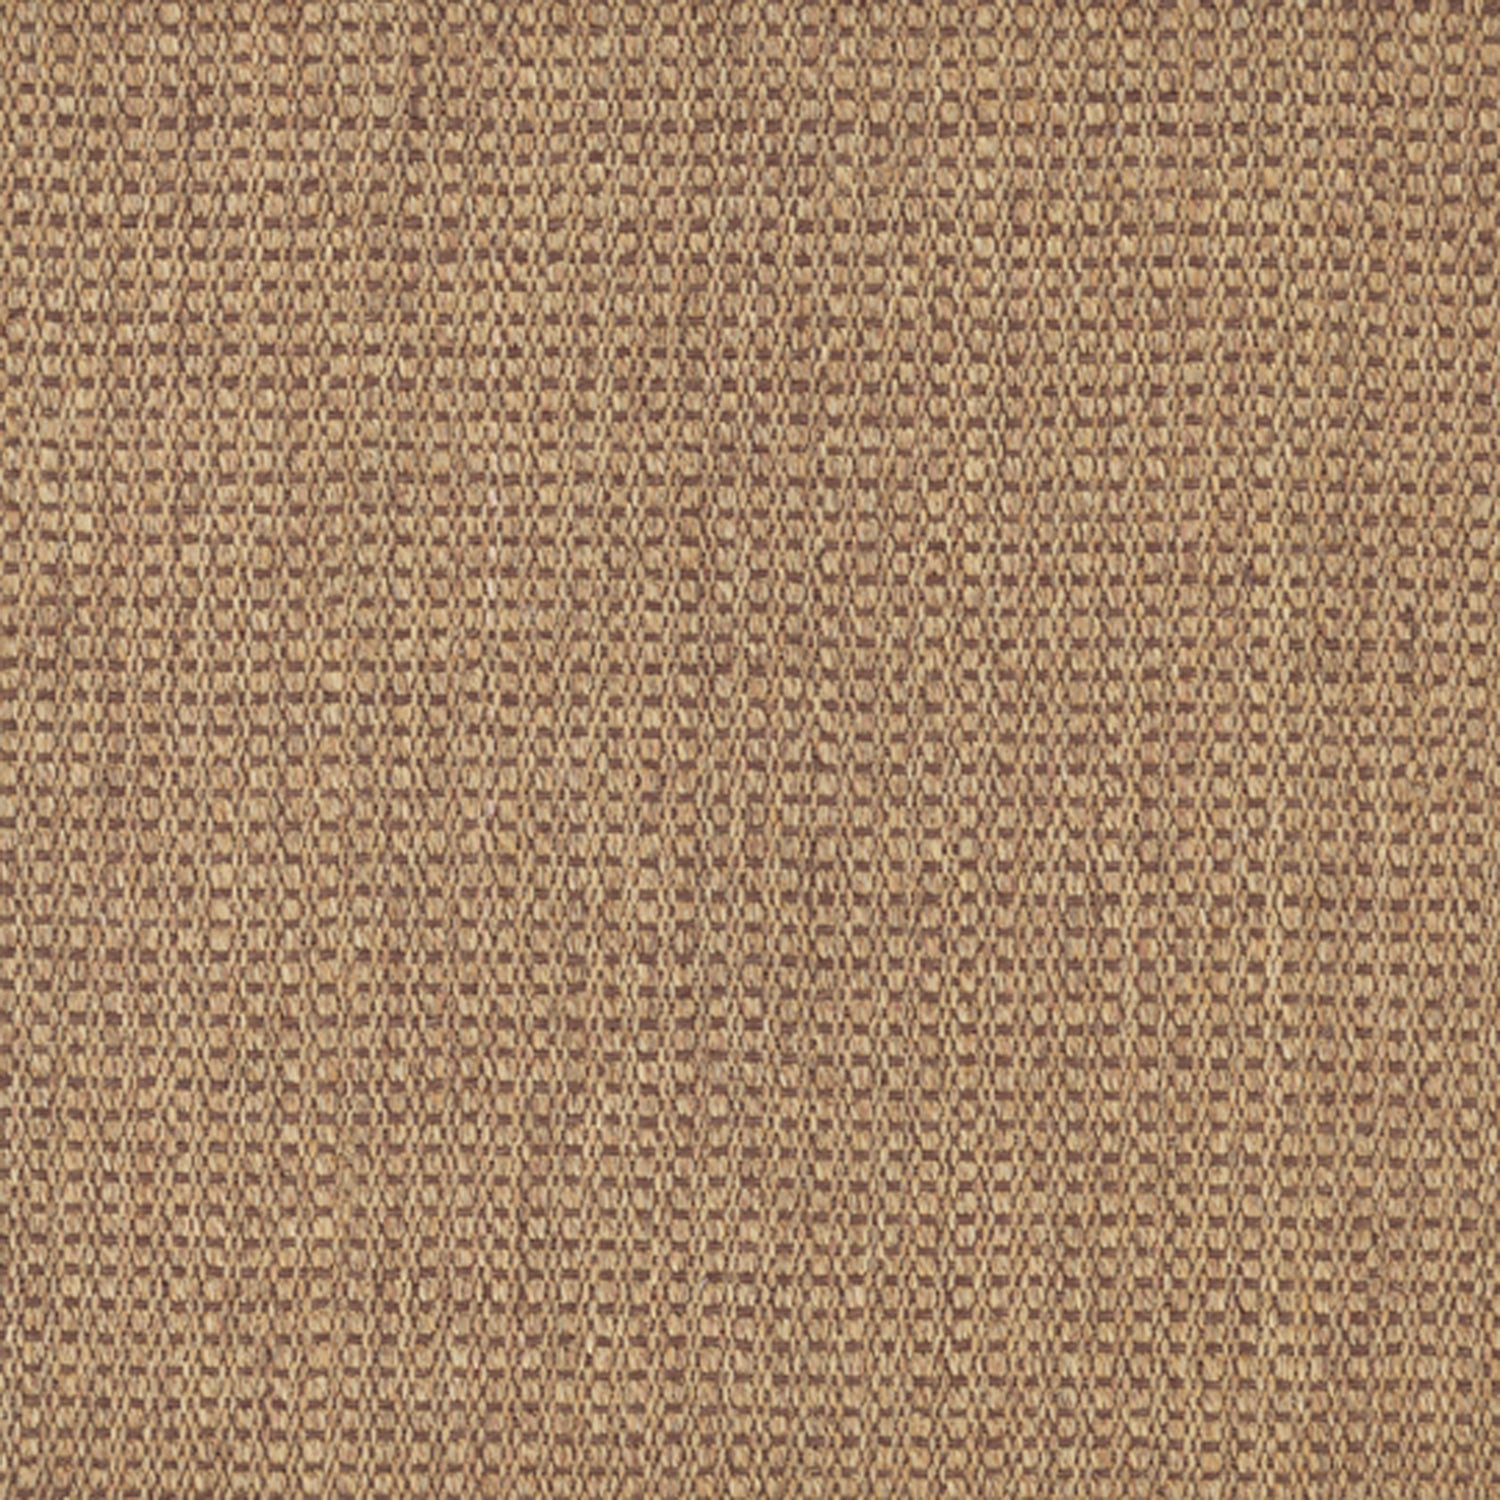 Sisal broadloom carpet swatch in a flat grid weave in tan and brown.